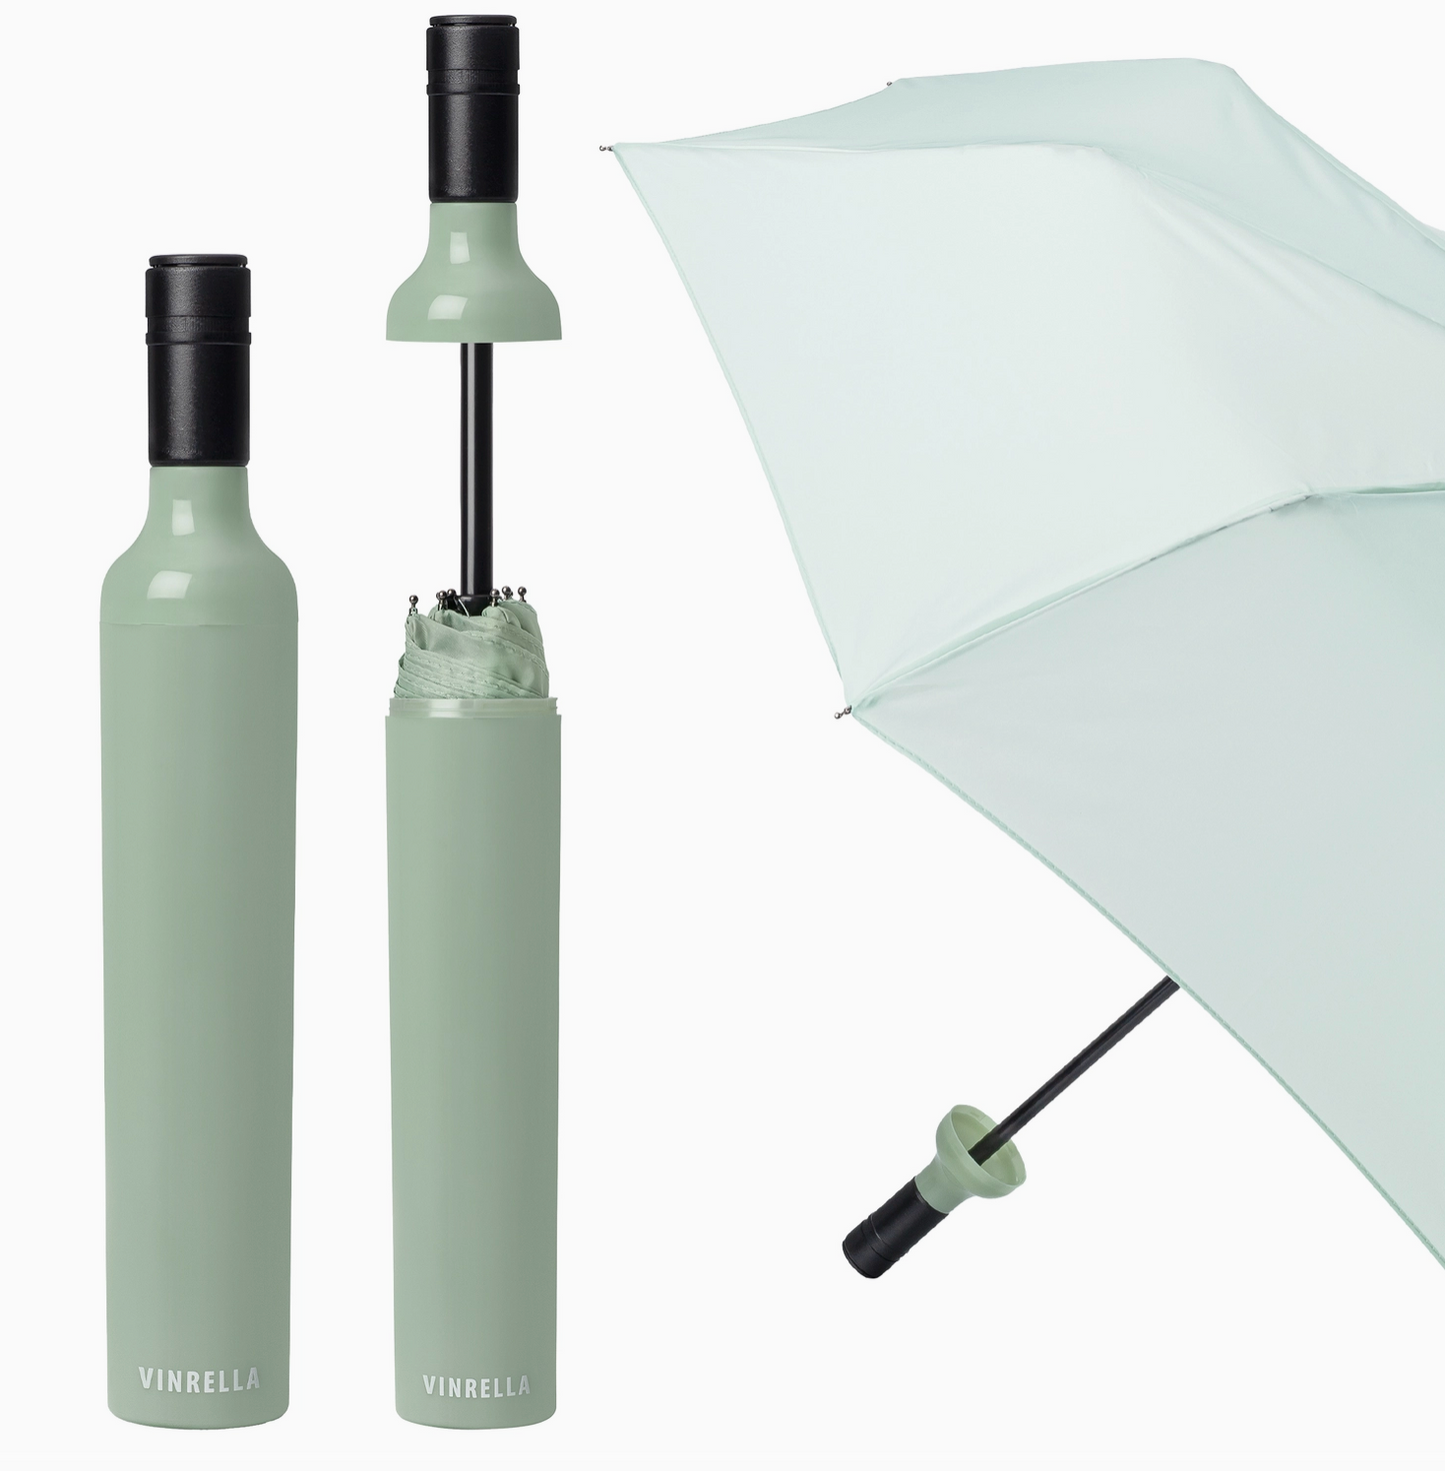 Vinrella Umbrella in Bottle